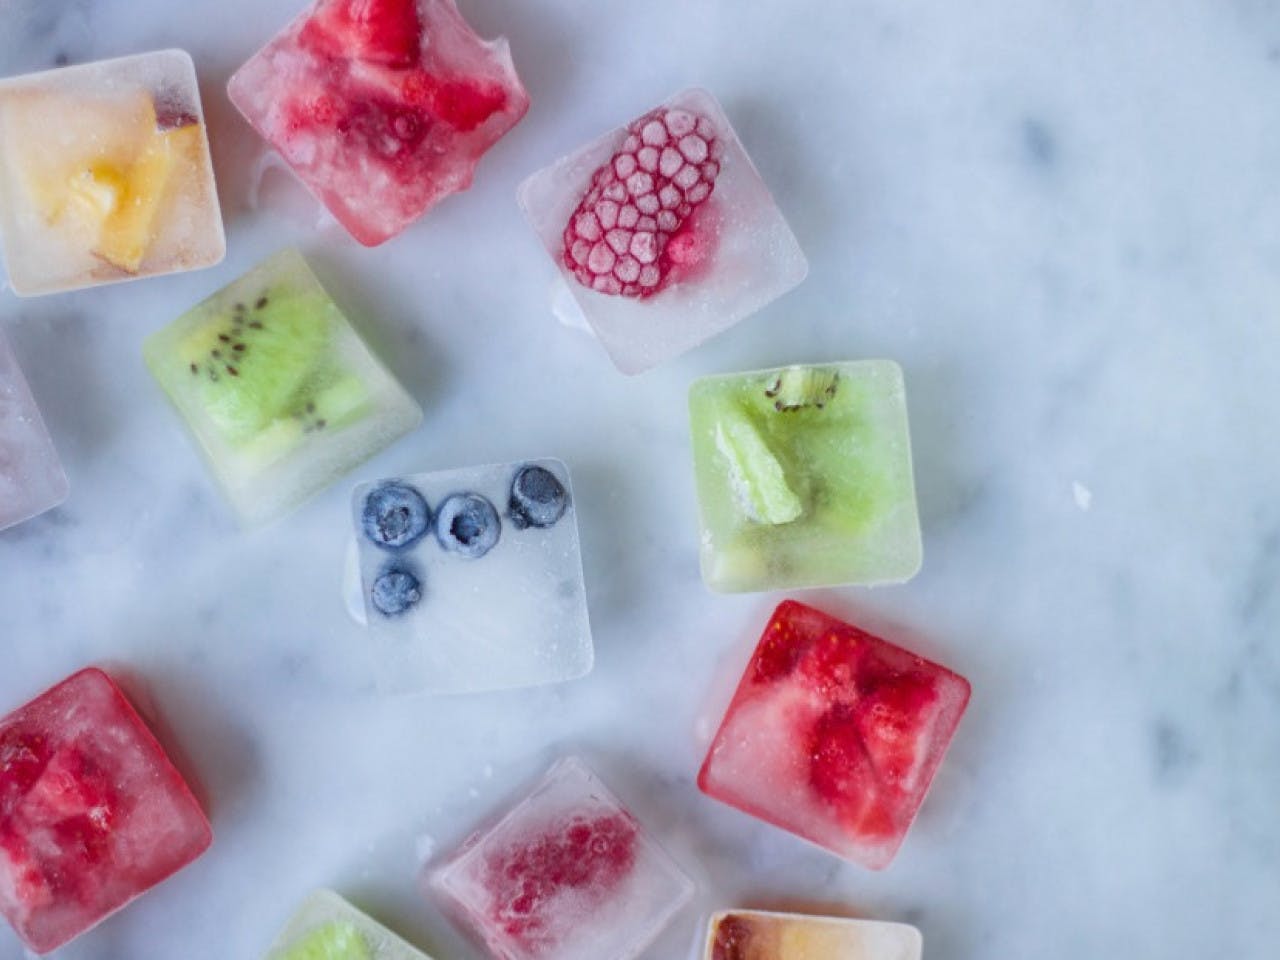 Cubitos de hielo con fruta — Guac